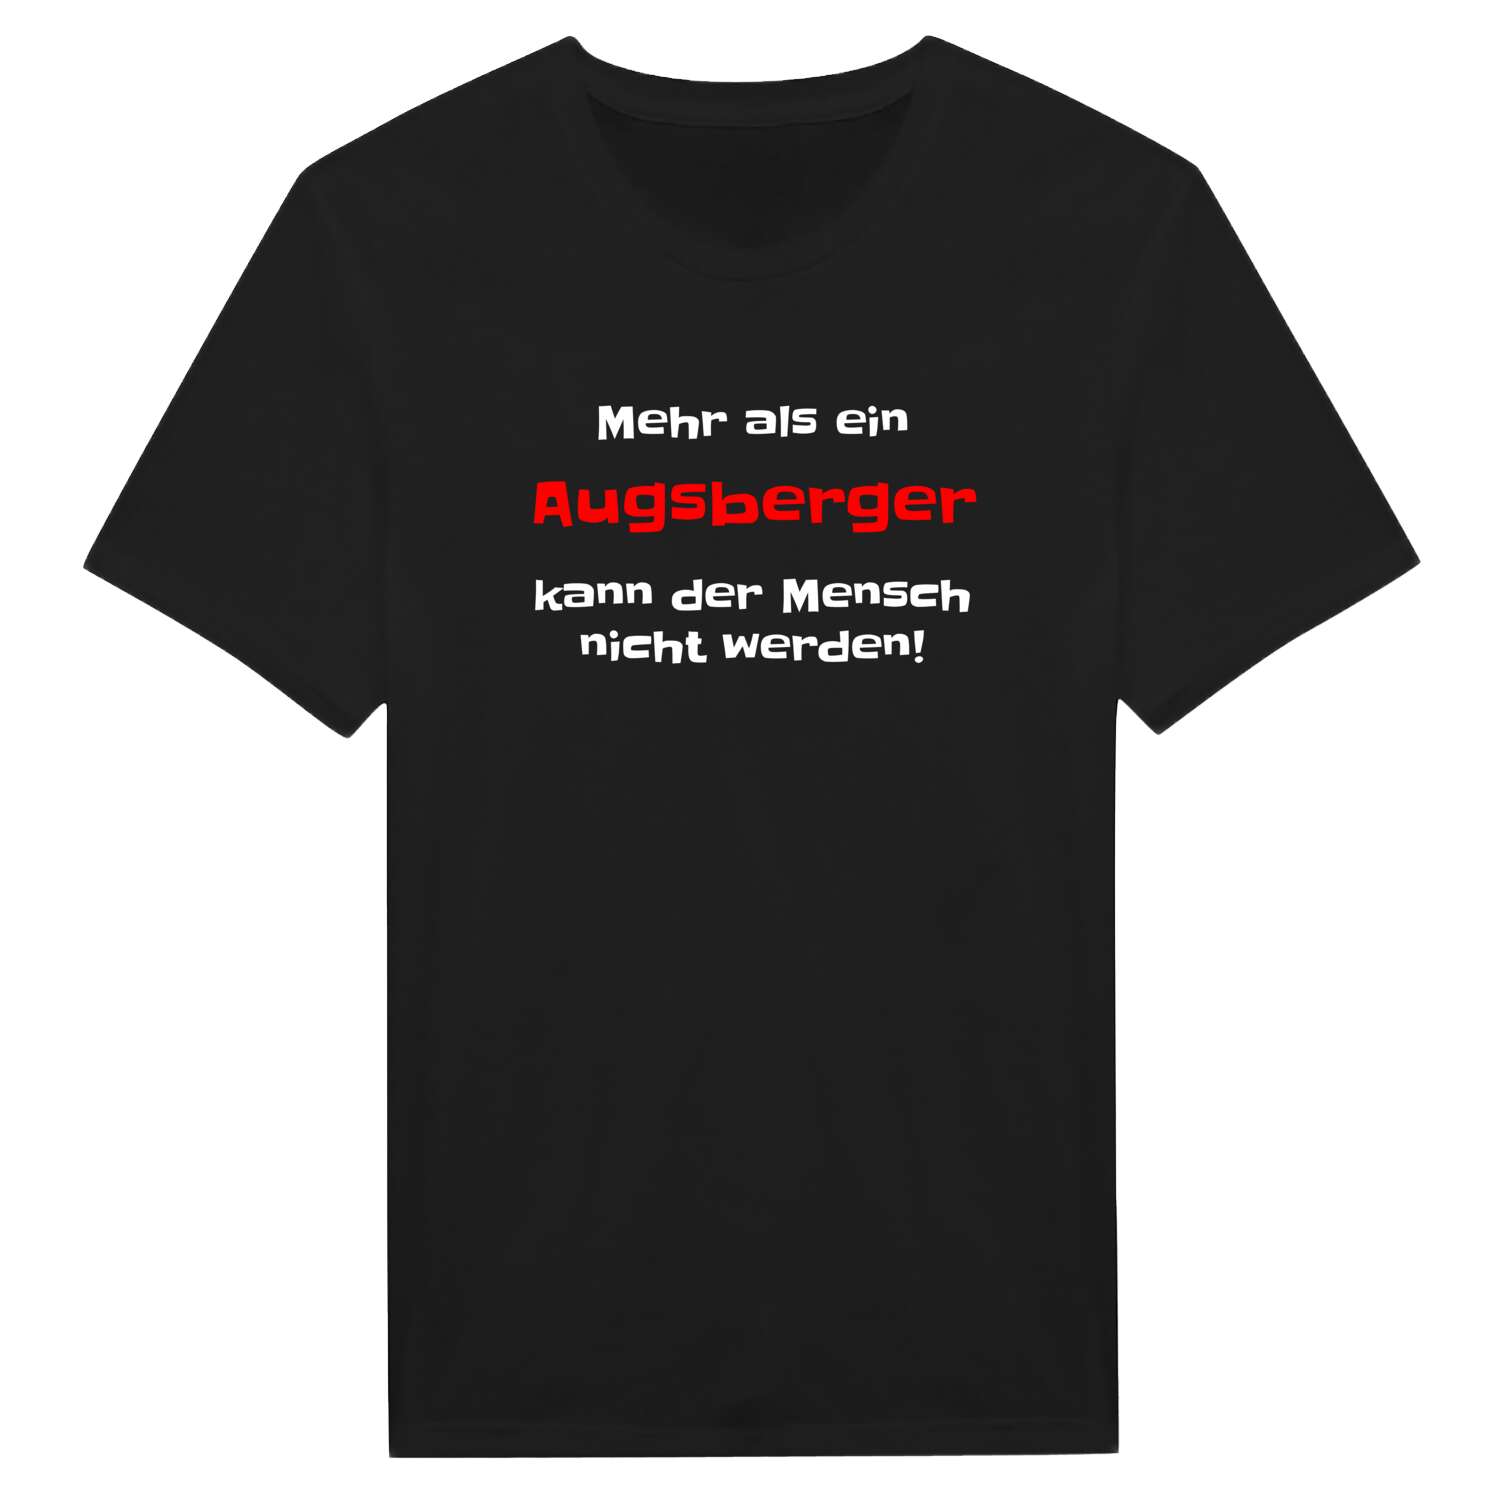 Augsberg T-Shirt »Mehr als ein«